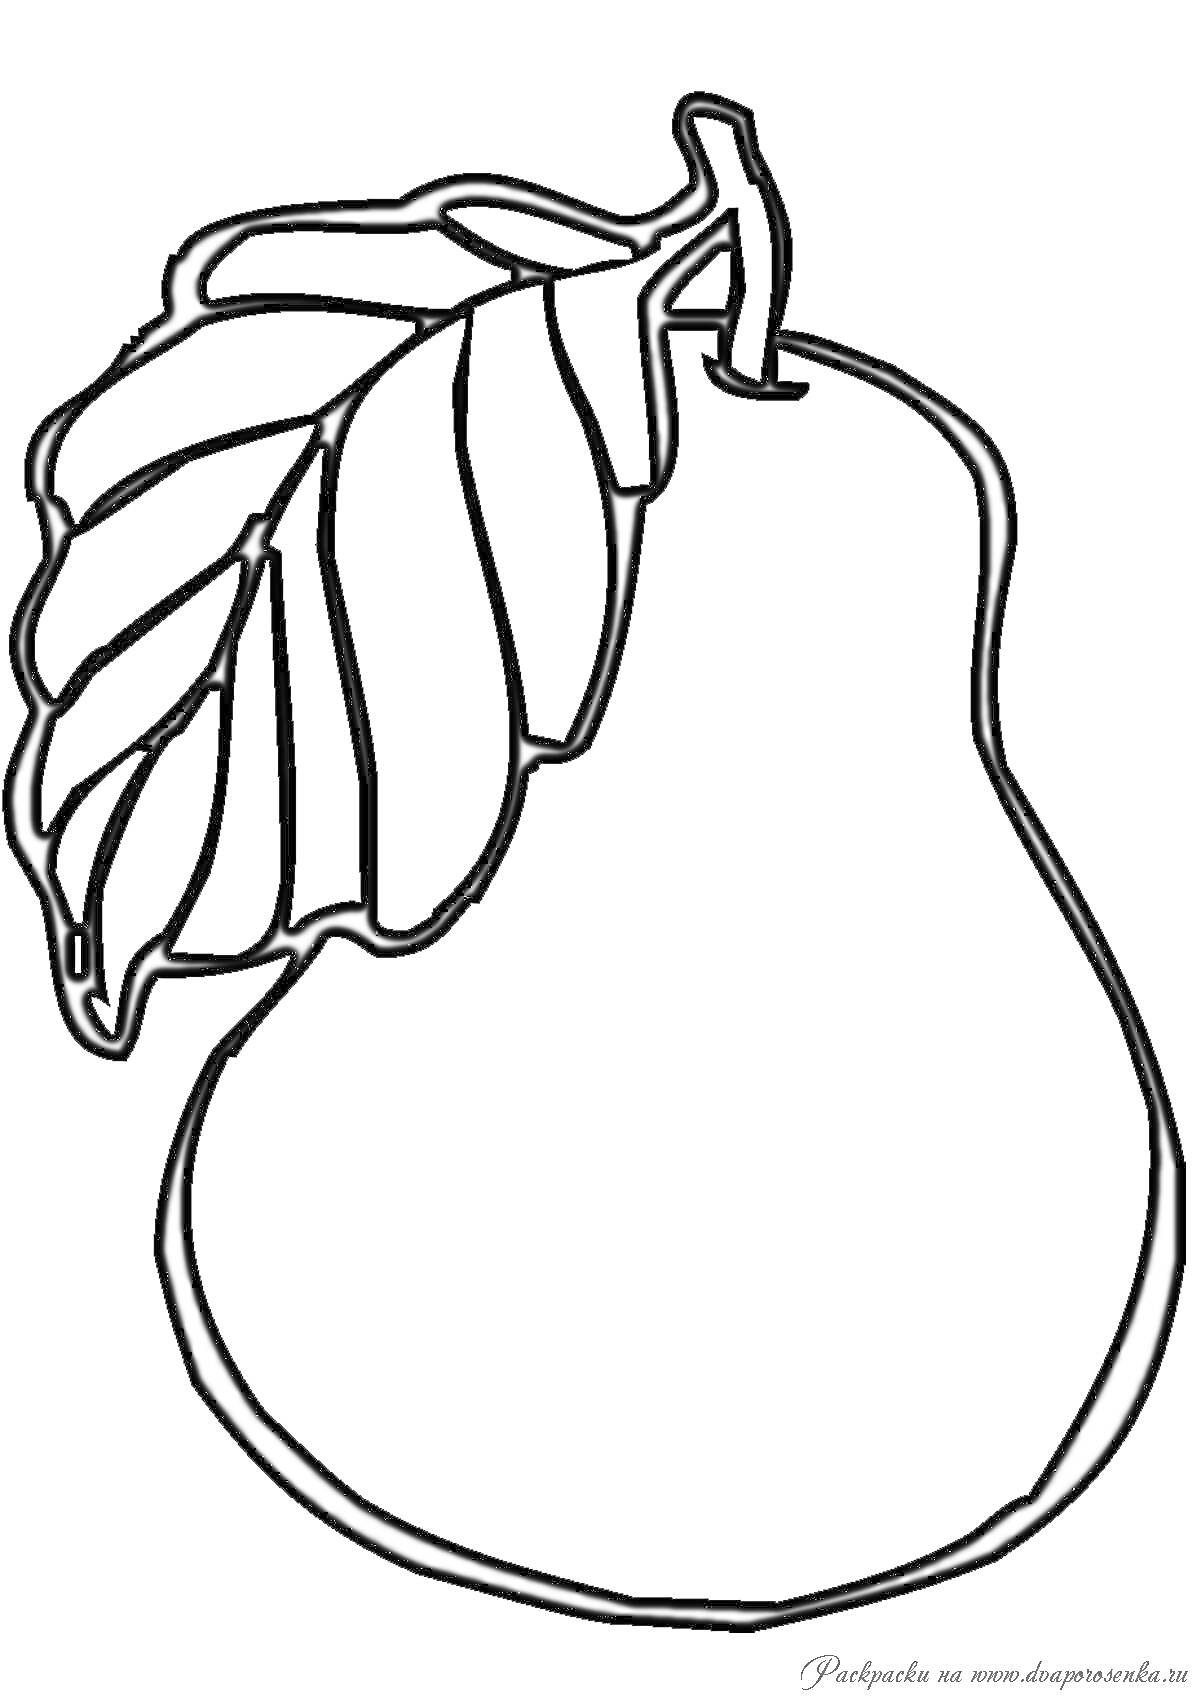 Раскраска Контур груши с листом